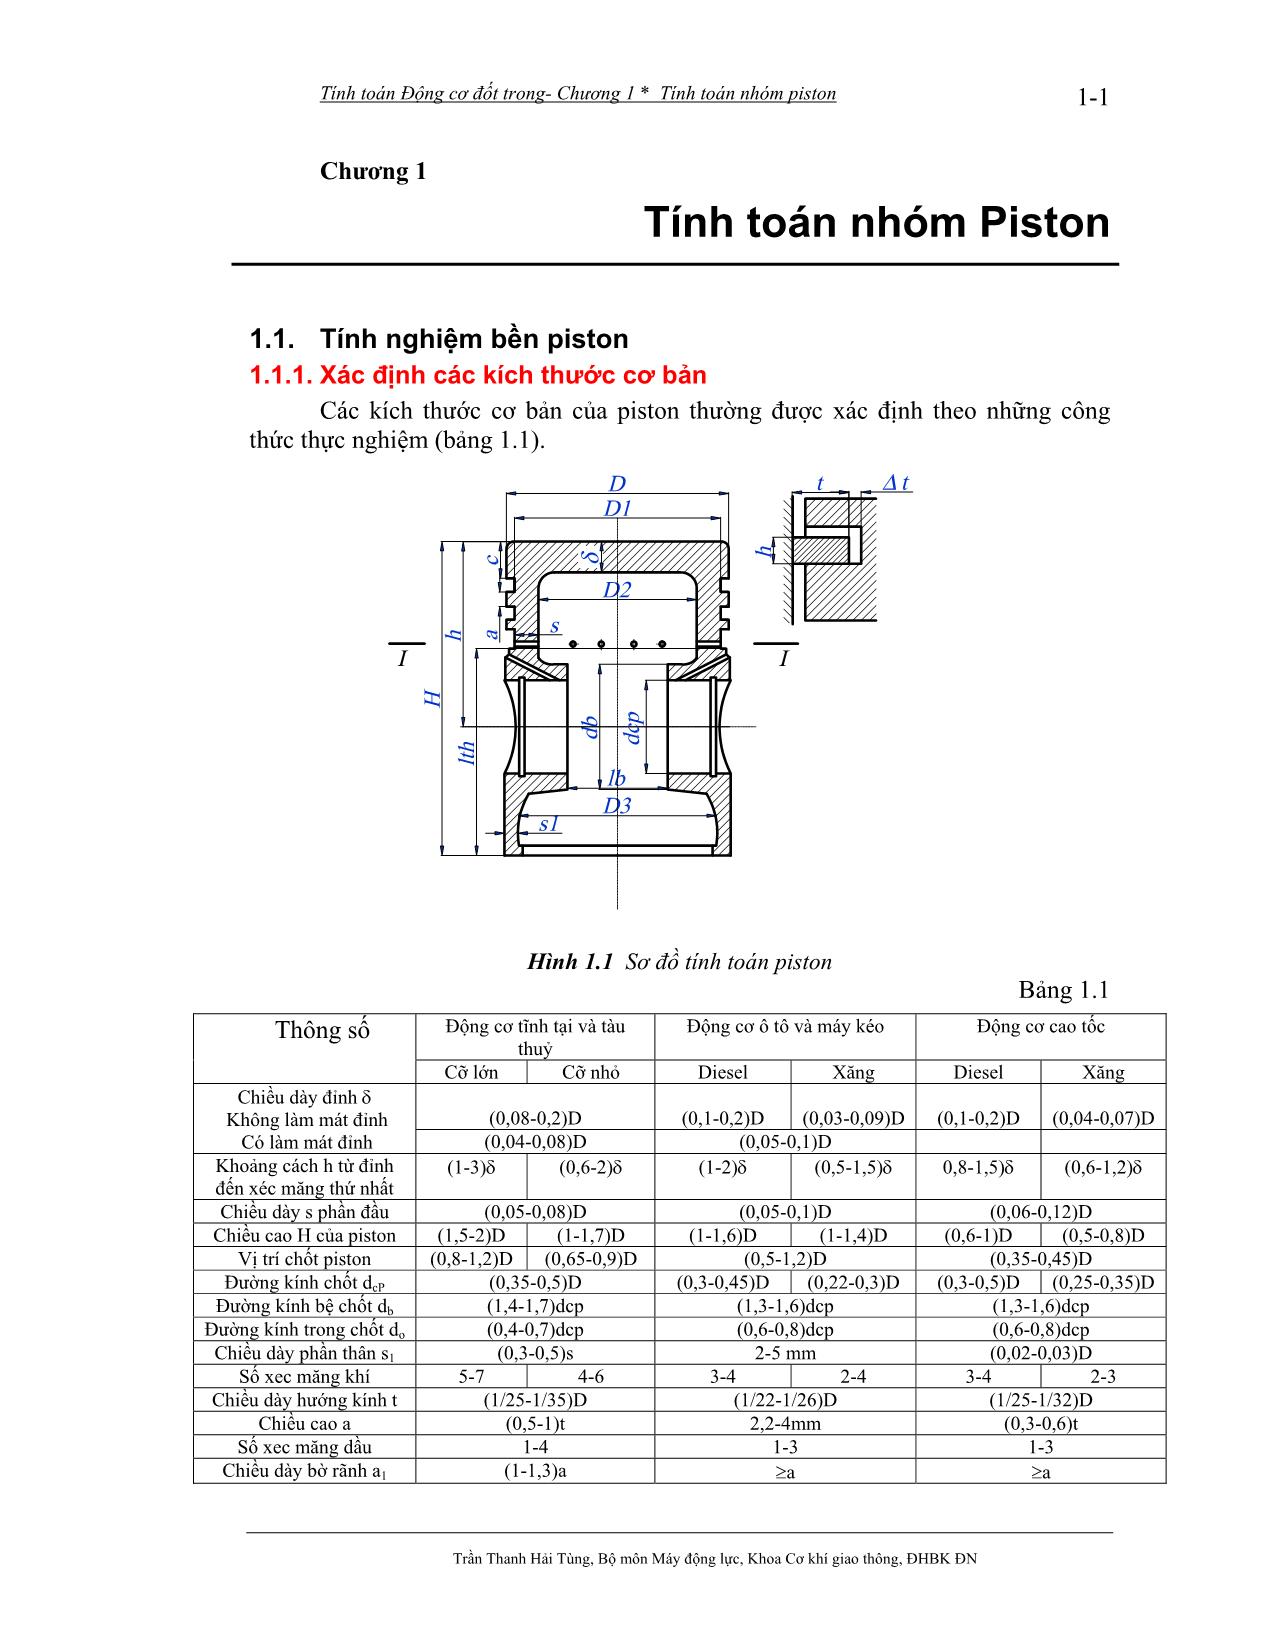 Bài giảng Tính toán thiết kế động cơ đốt trong - Trần Thanh Hải Tùng trang 2